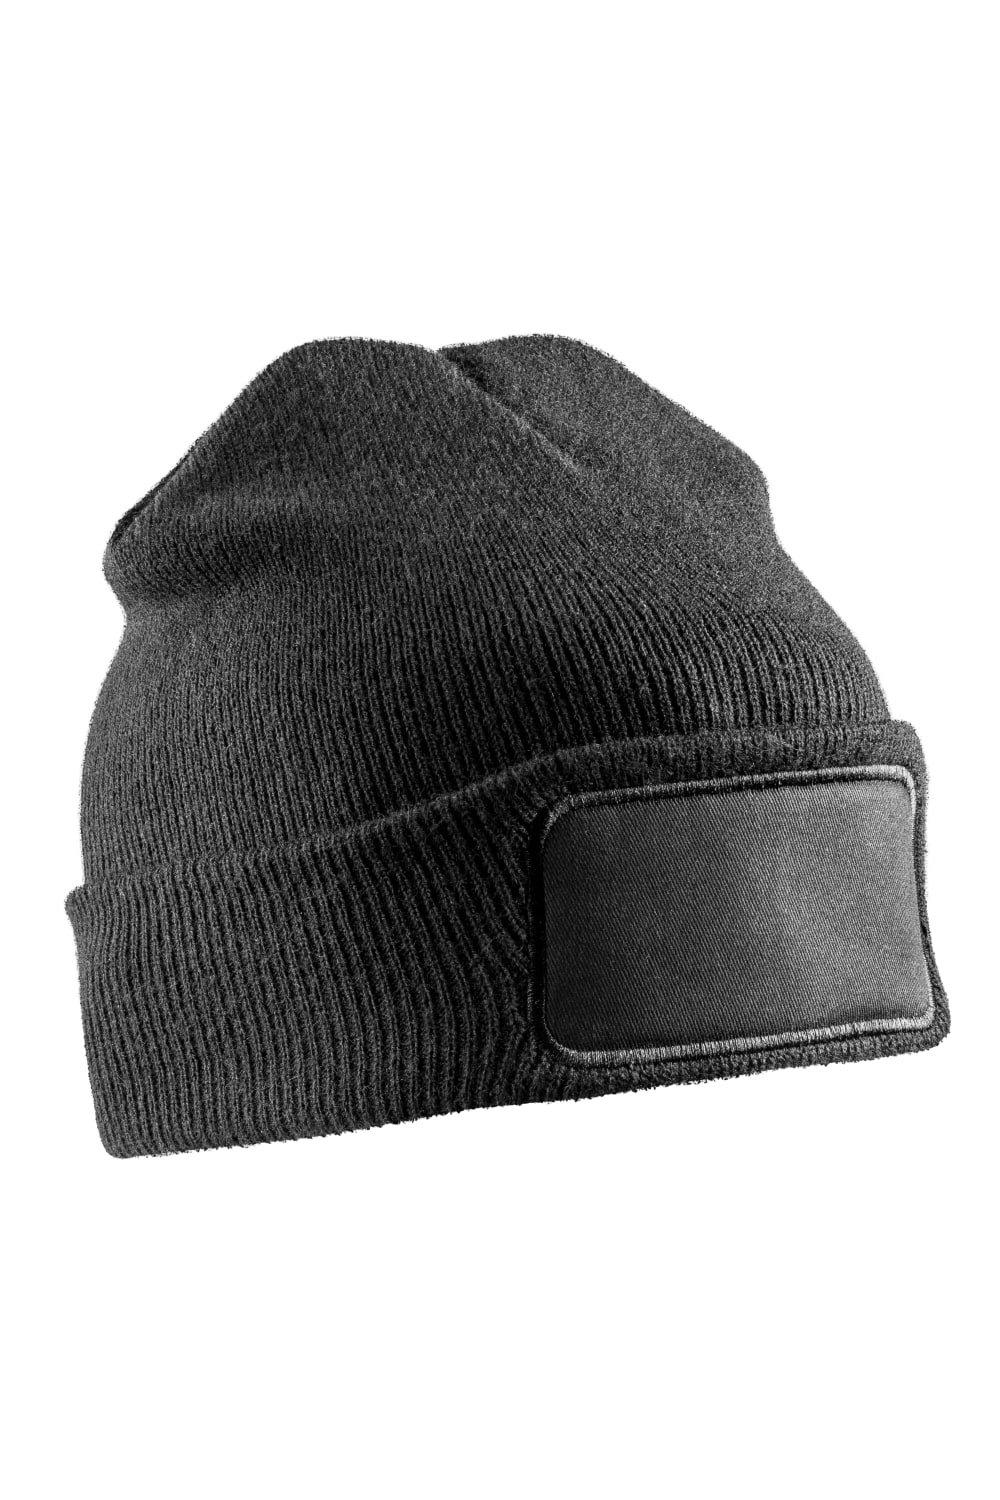 Зимняя шапка Thinsulate для печати Result, черный перчатки трикотажные акрил цвет оранжевый двойная манжета россия сибртех